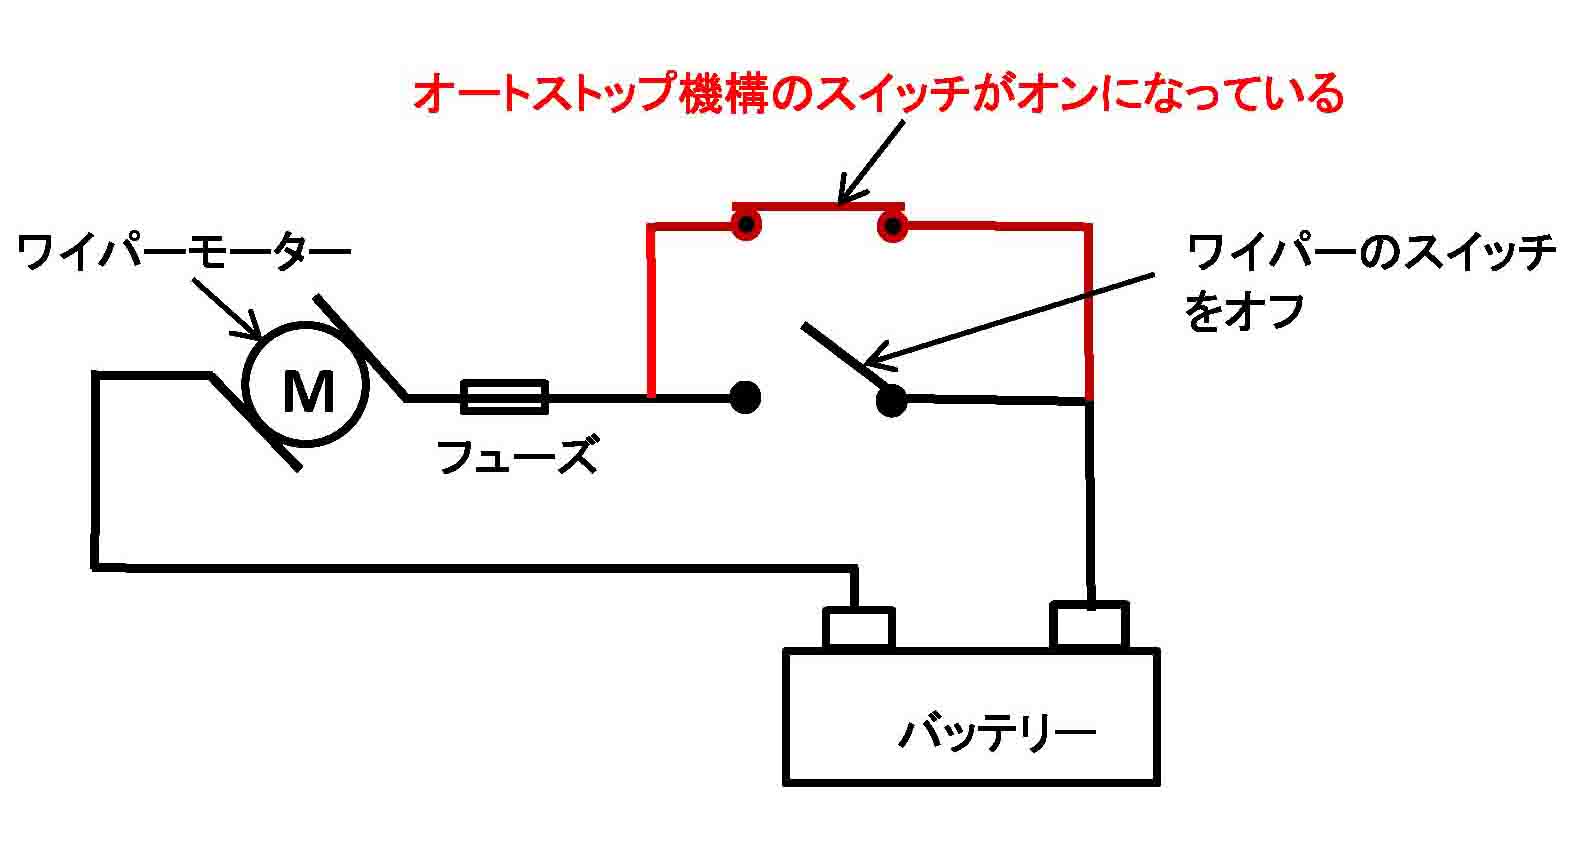 ｵｰﾄｽﾄｯﾌﾟ機構図解-1.jpg